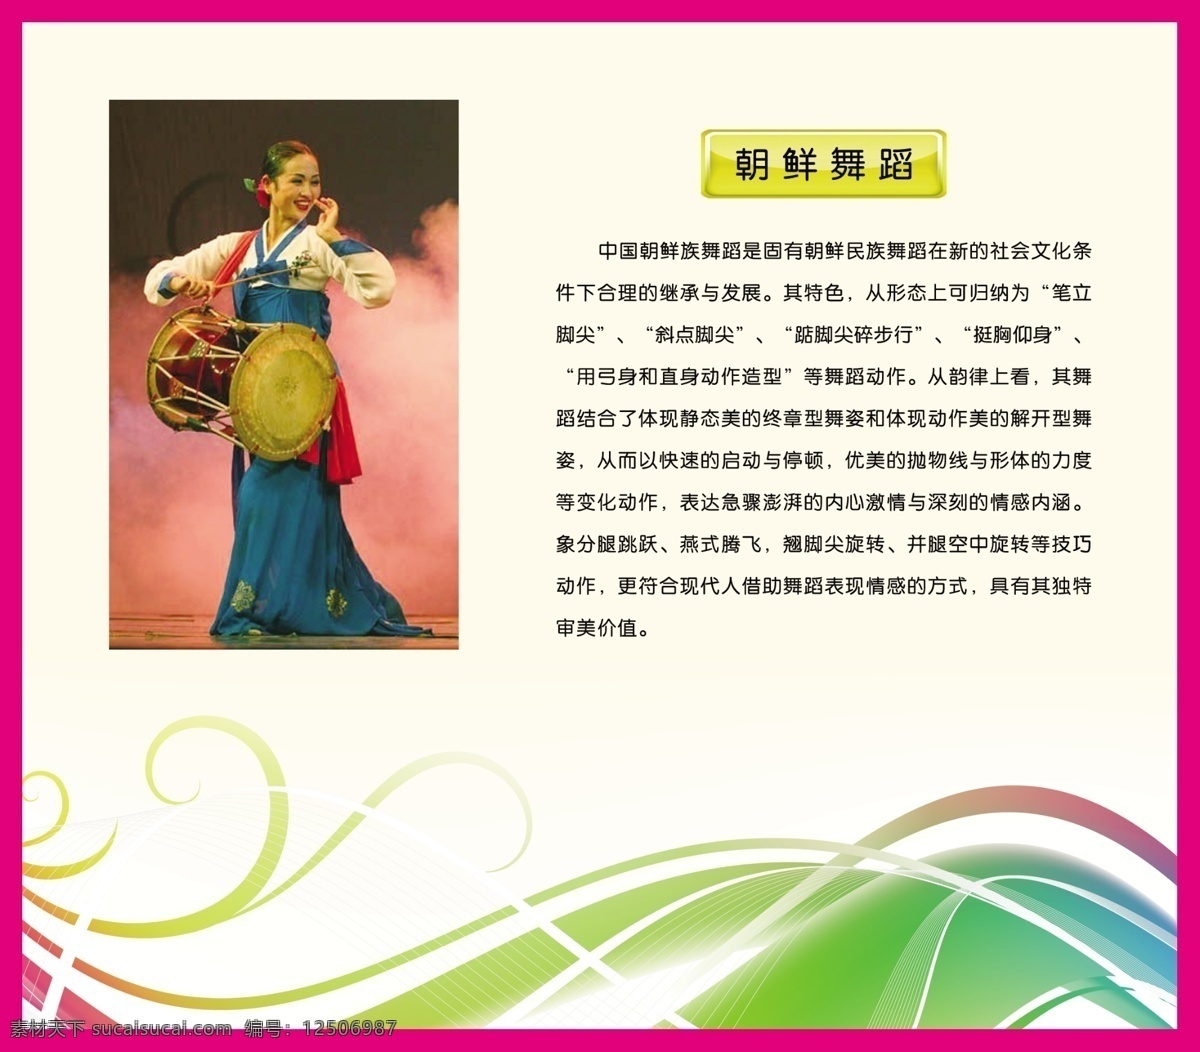 朝鲜 舞蹈图片 分层 动感线条 跳舞 舞蹈音乐 源文件 朝鲜舞蹈 民间舞蹈 psd源文件